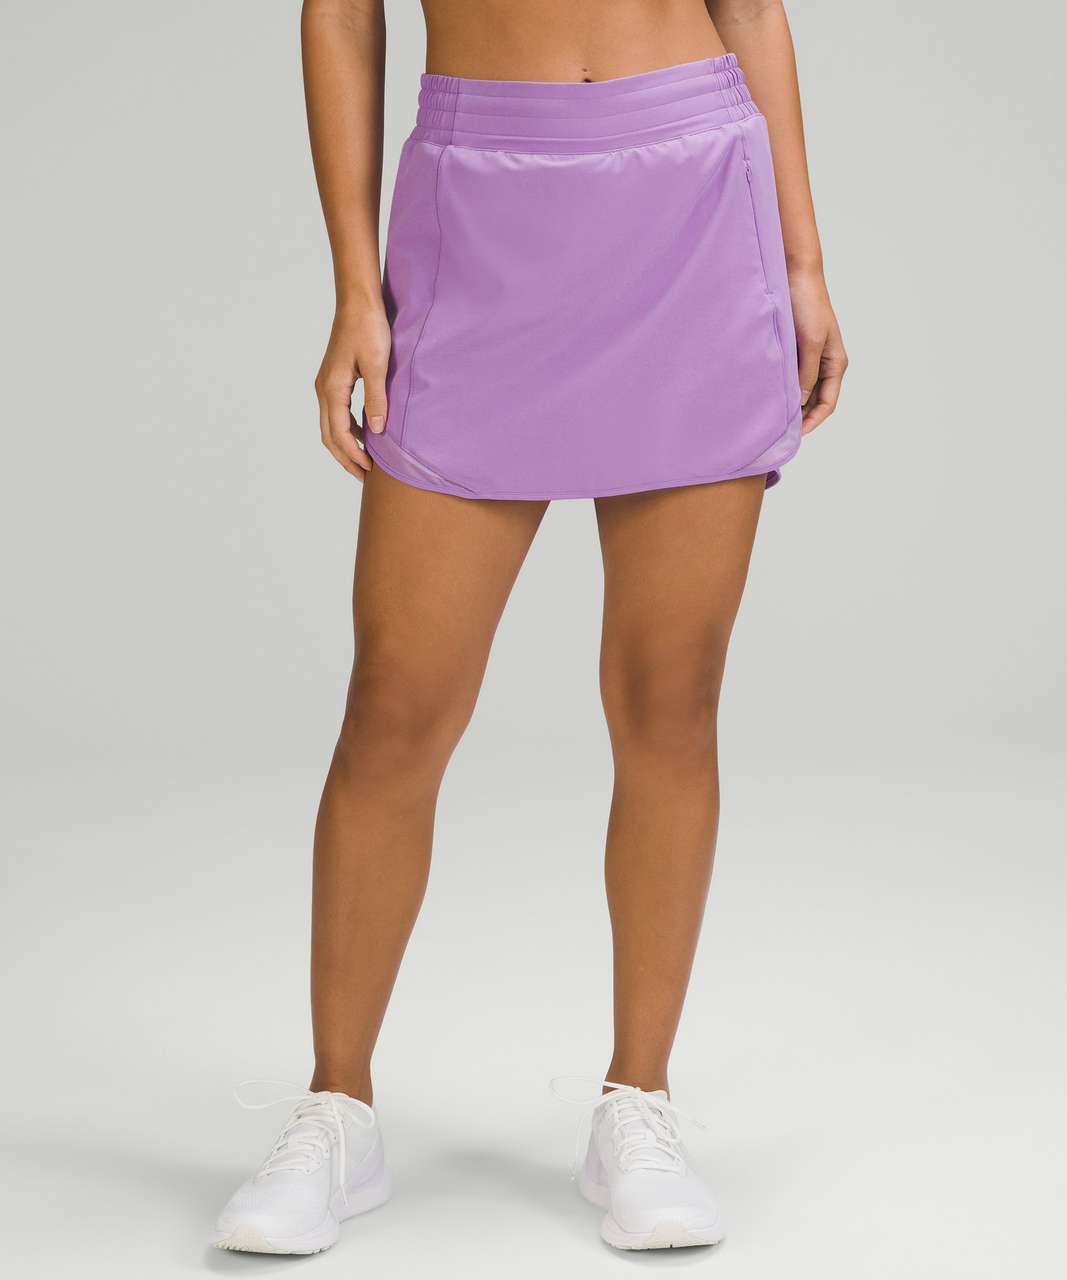 Lululemon Hotty Hot High-Rise Skirt - Purple Blossom Light